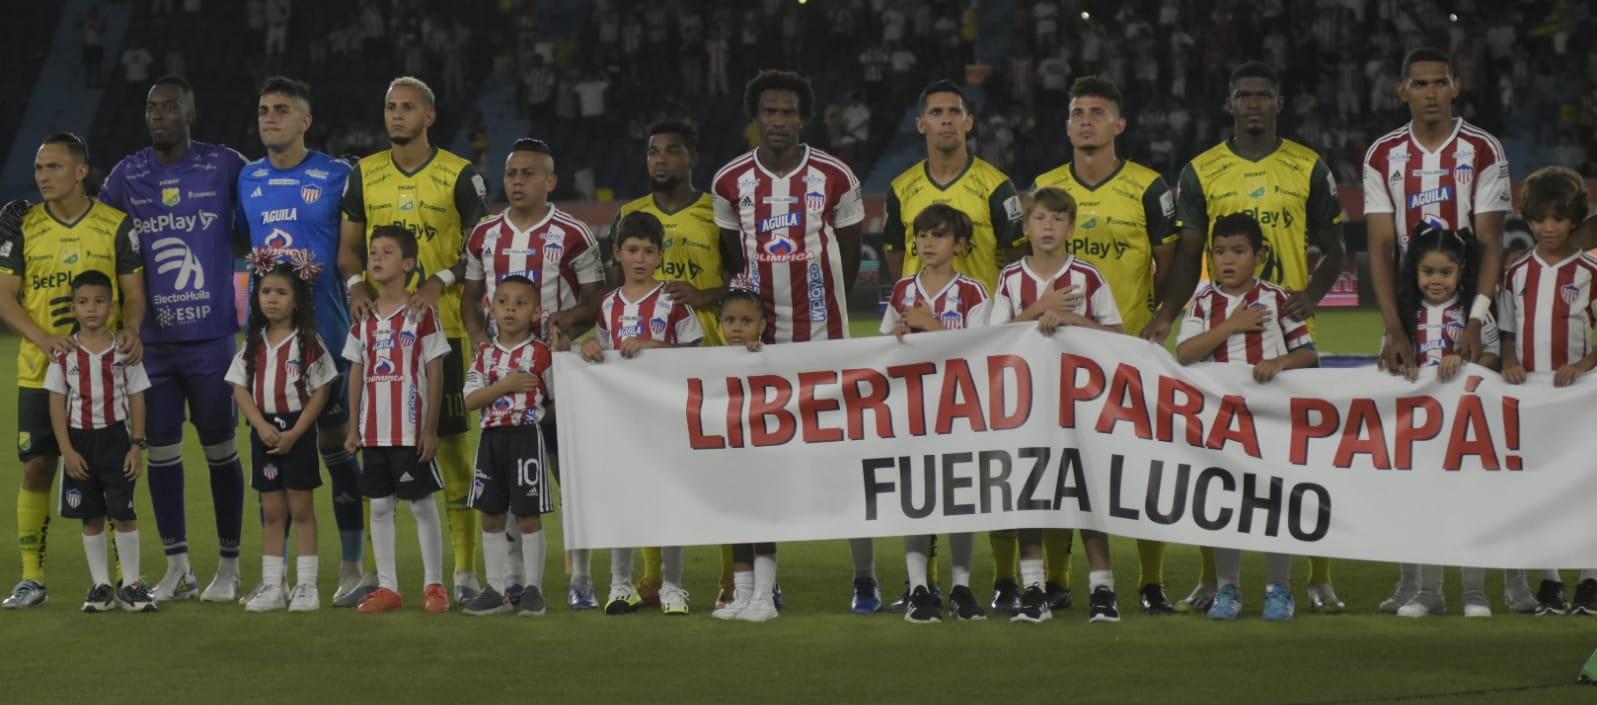 La pancarta que mostraron Junior y el Atlético Huila.